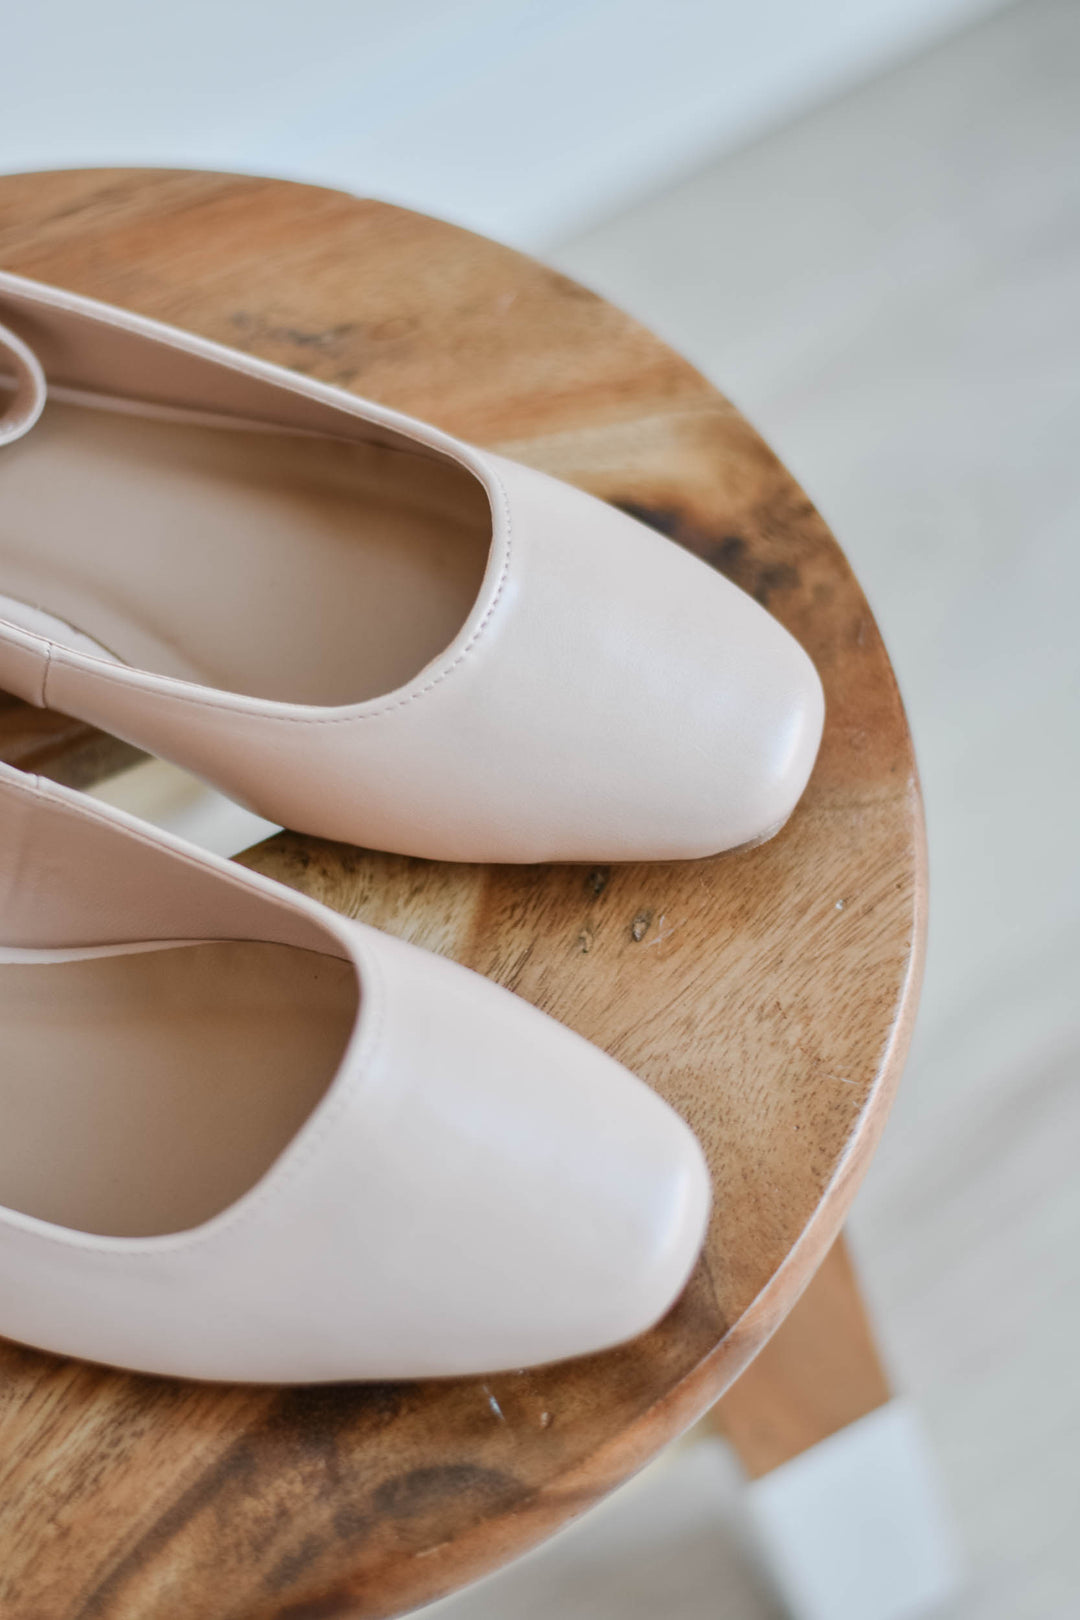 Ankle Strap Ballet Flat - Ballet Blush